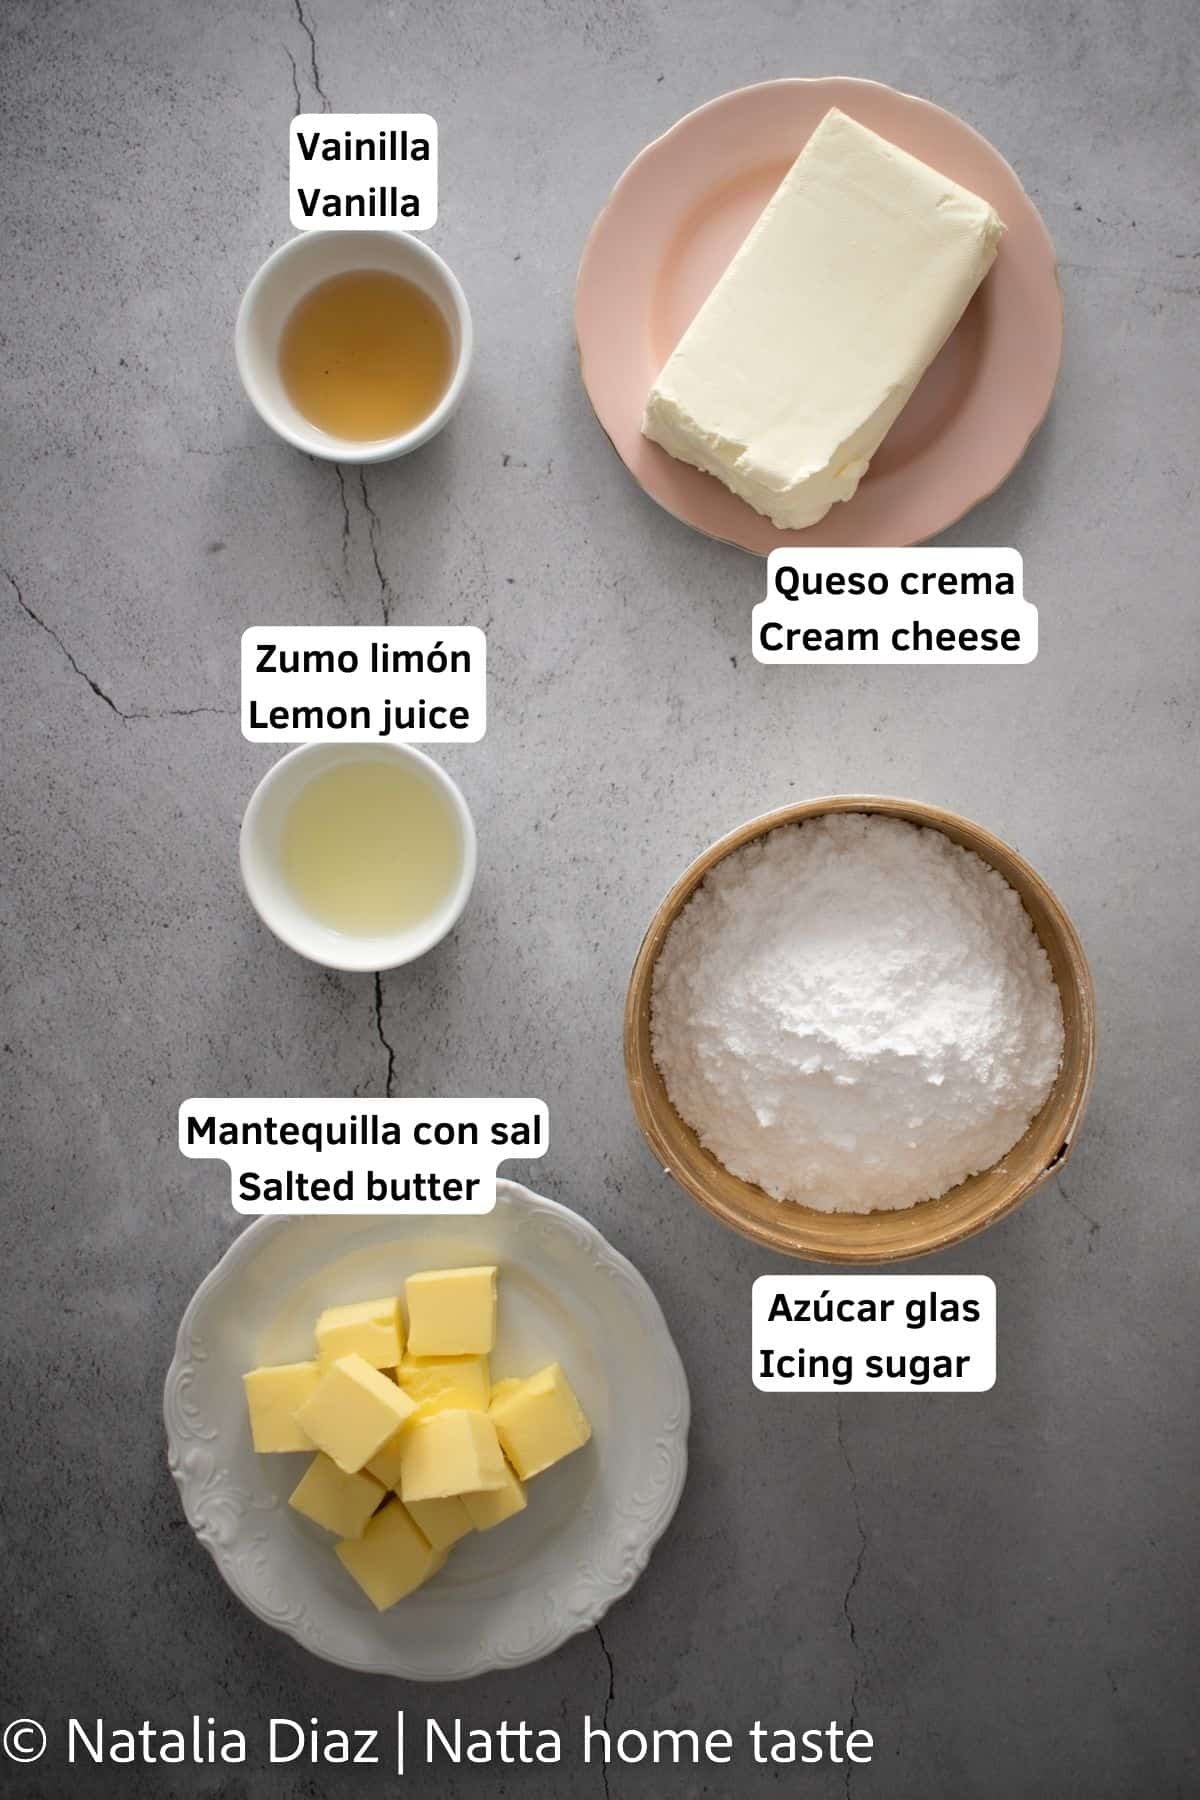 Ingredientes para preparar frosting de queso crema. queso crema en barra servido en un plato redondo rosado, azúcar glas servido en un bol redondo de madera, mantequilla partida en cuadros en un plato redondo blanco. extracto de vainilla y zumo de limón servidos en pequeños contenedores.